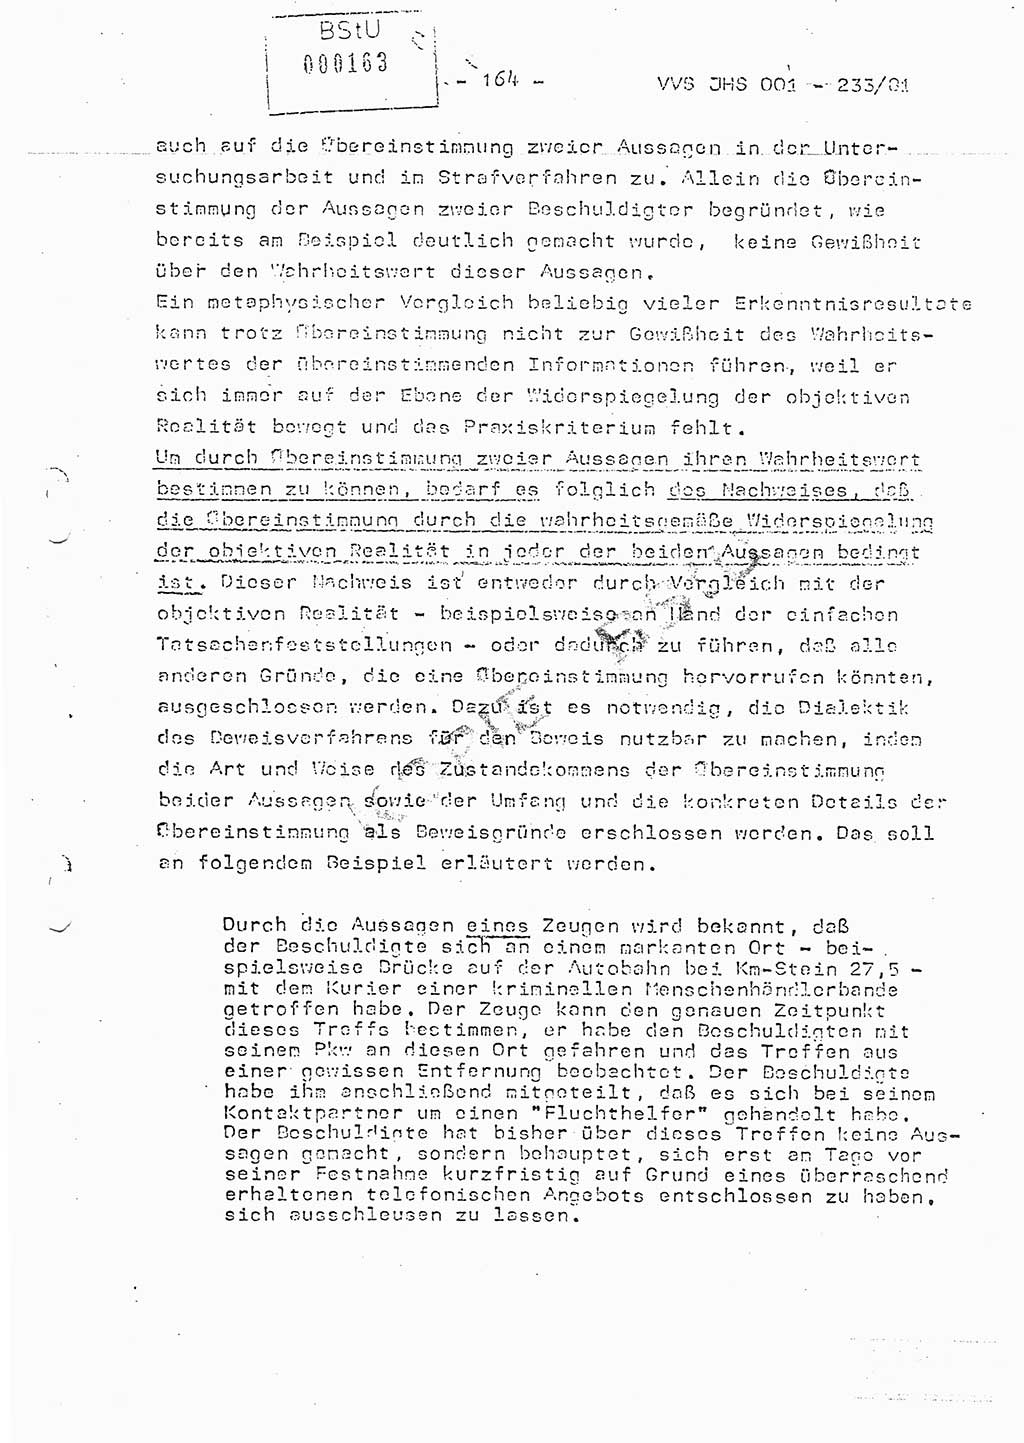 Dissertation Oberstleutnant Horst Zank (JHS), Oberstleutnant Dr. Karl-Heinz Knoblauch (JHS), Oberstleutnant Gustav-Adolf Kowalewski (HA Ⅸ), Oberstleutnant Wolfgang Plötner (HA Ⅸ), Ministerium für Staatssicherheit (MfS) [Deutsche Demokratische Republik (DDR)], Juristische Hochschule (JHS), Vertrauliche Verschlußsache (VVS) o001-233/81, Potsdam 1981, Blatt 164 (Diss. MfS DDR JHS VVS o001-233/81 1981, Bl. 164)